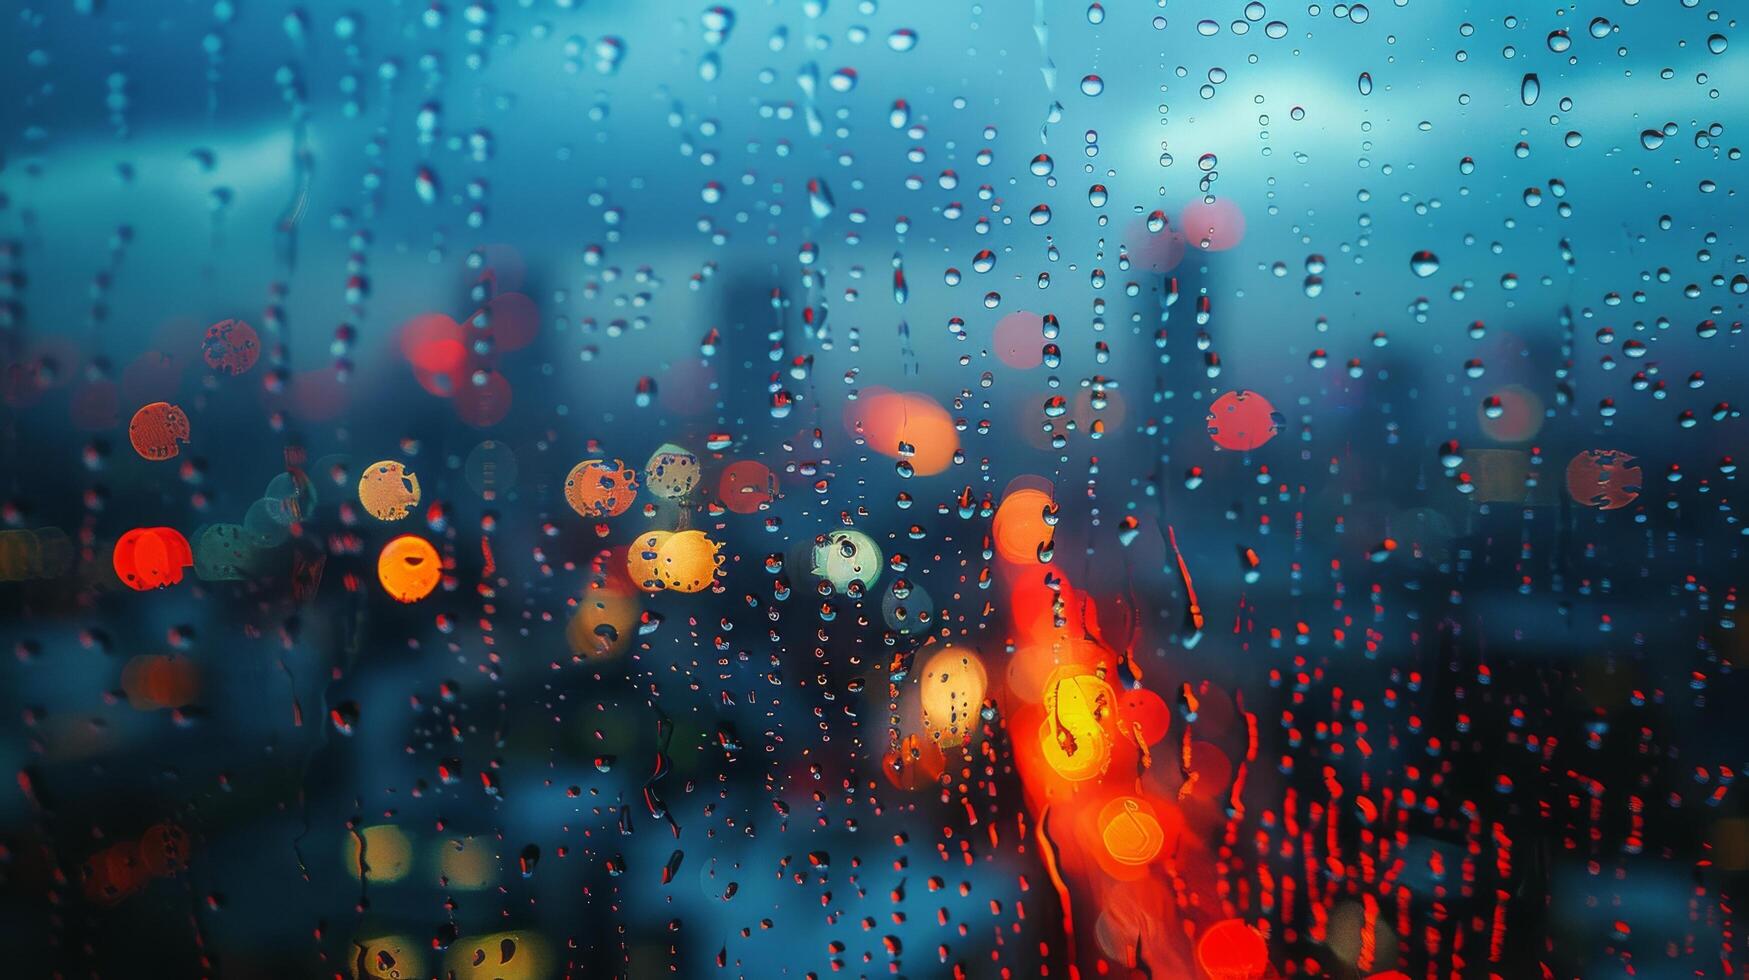 ai gerado chuva gotas em a janela do uma carro às noite foto